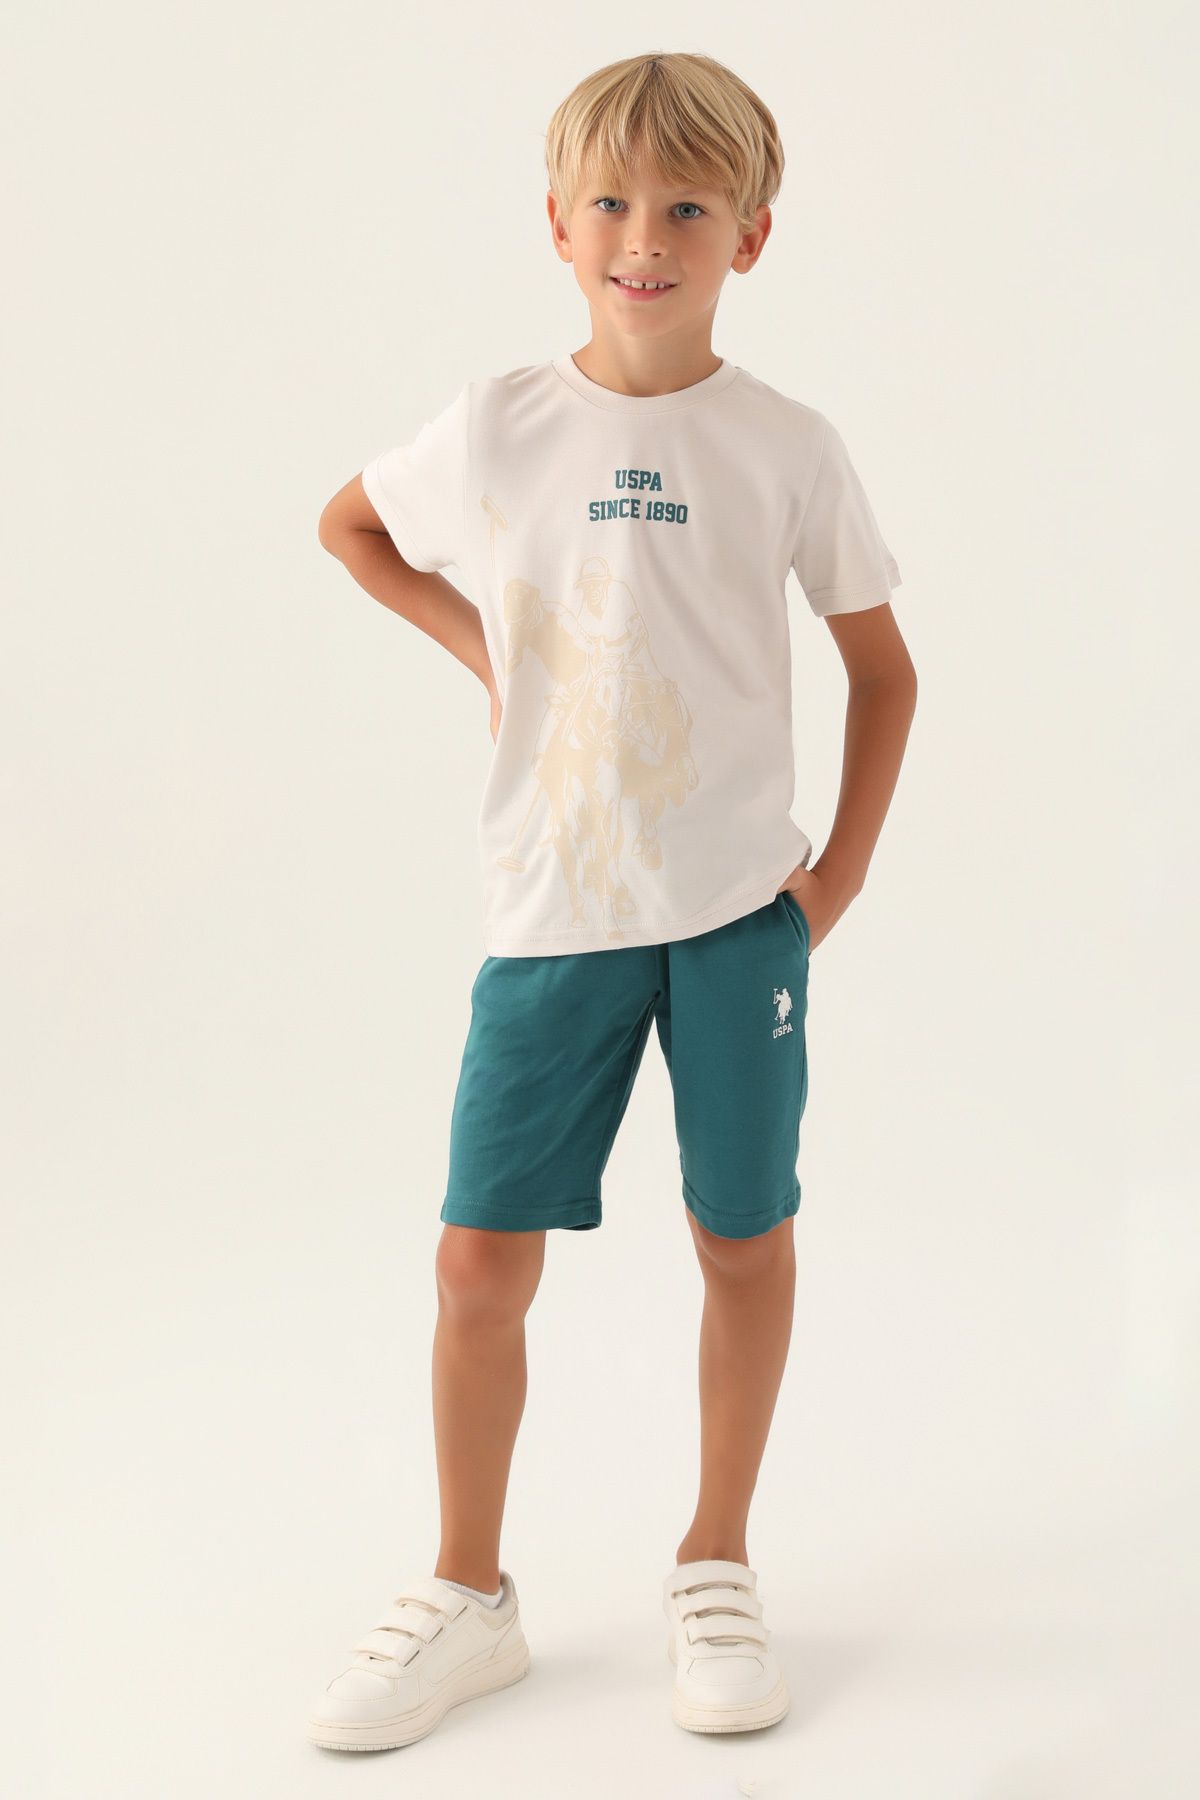 U.S. Polo Assn. Erkek Çocuk Lisanslı Authentic Clothing Alt Üst Takım